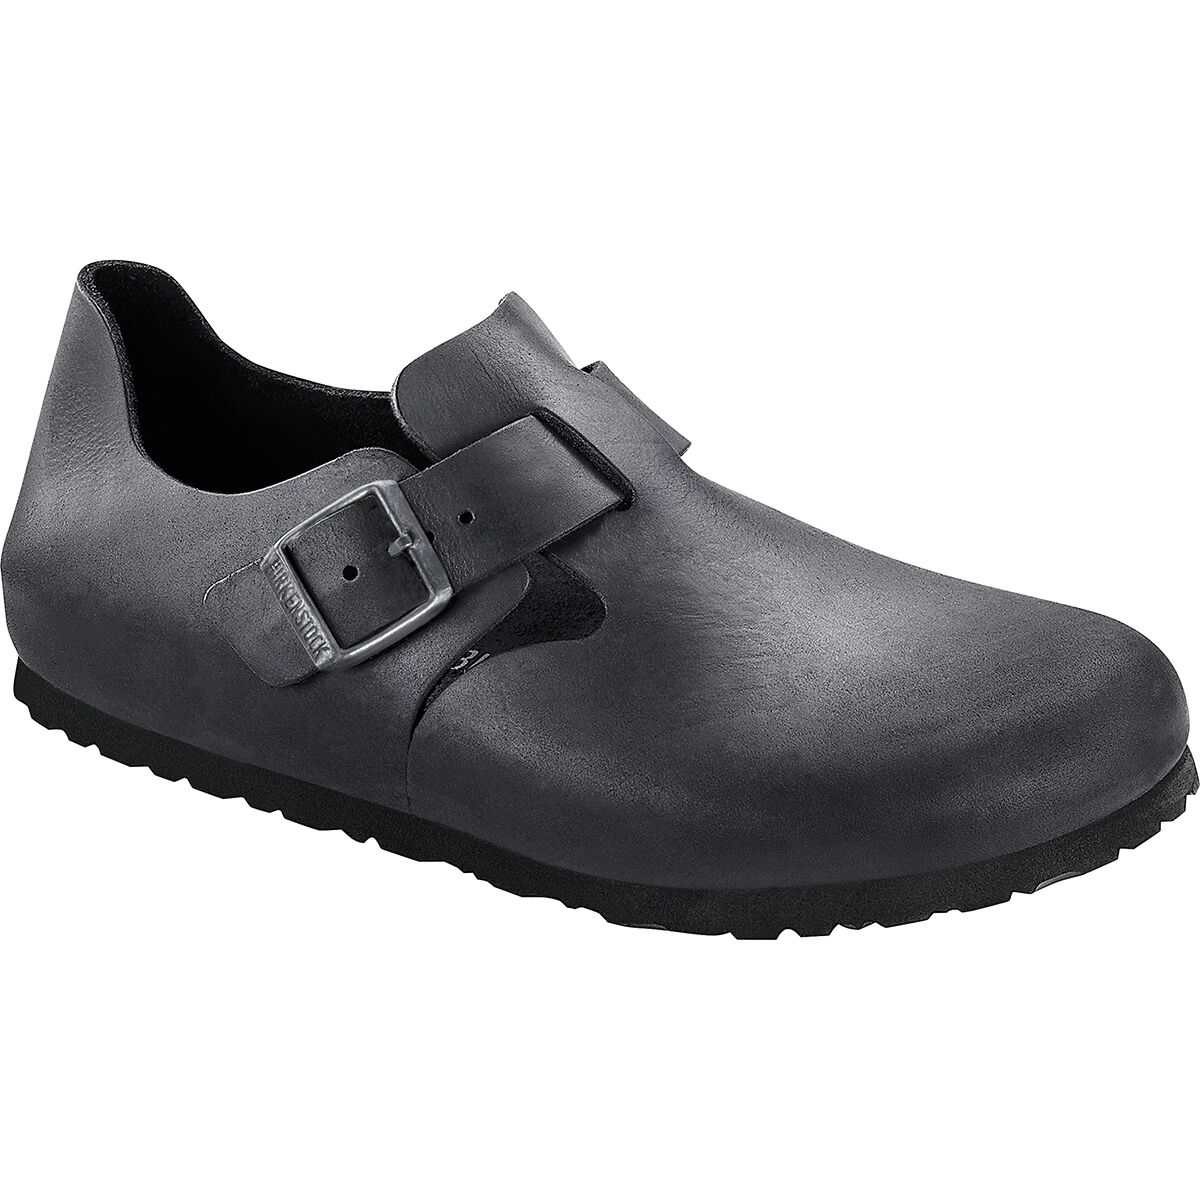 Birkenstock London Leather Shoe - Men's